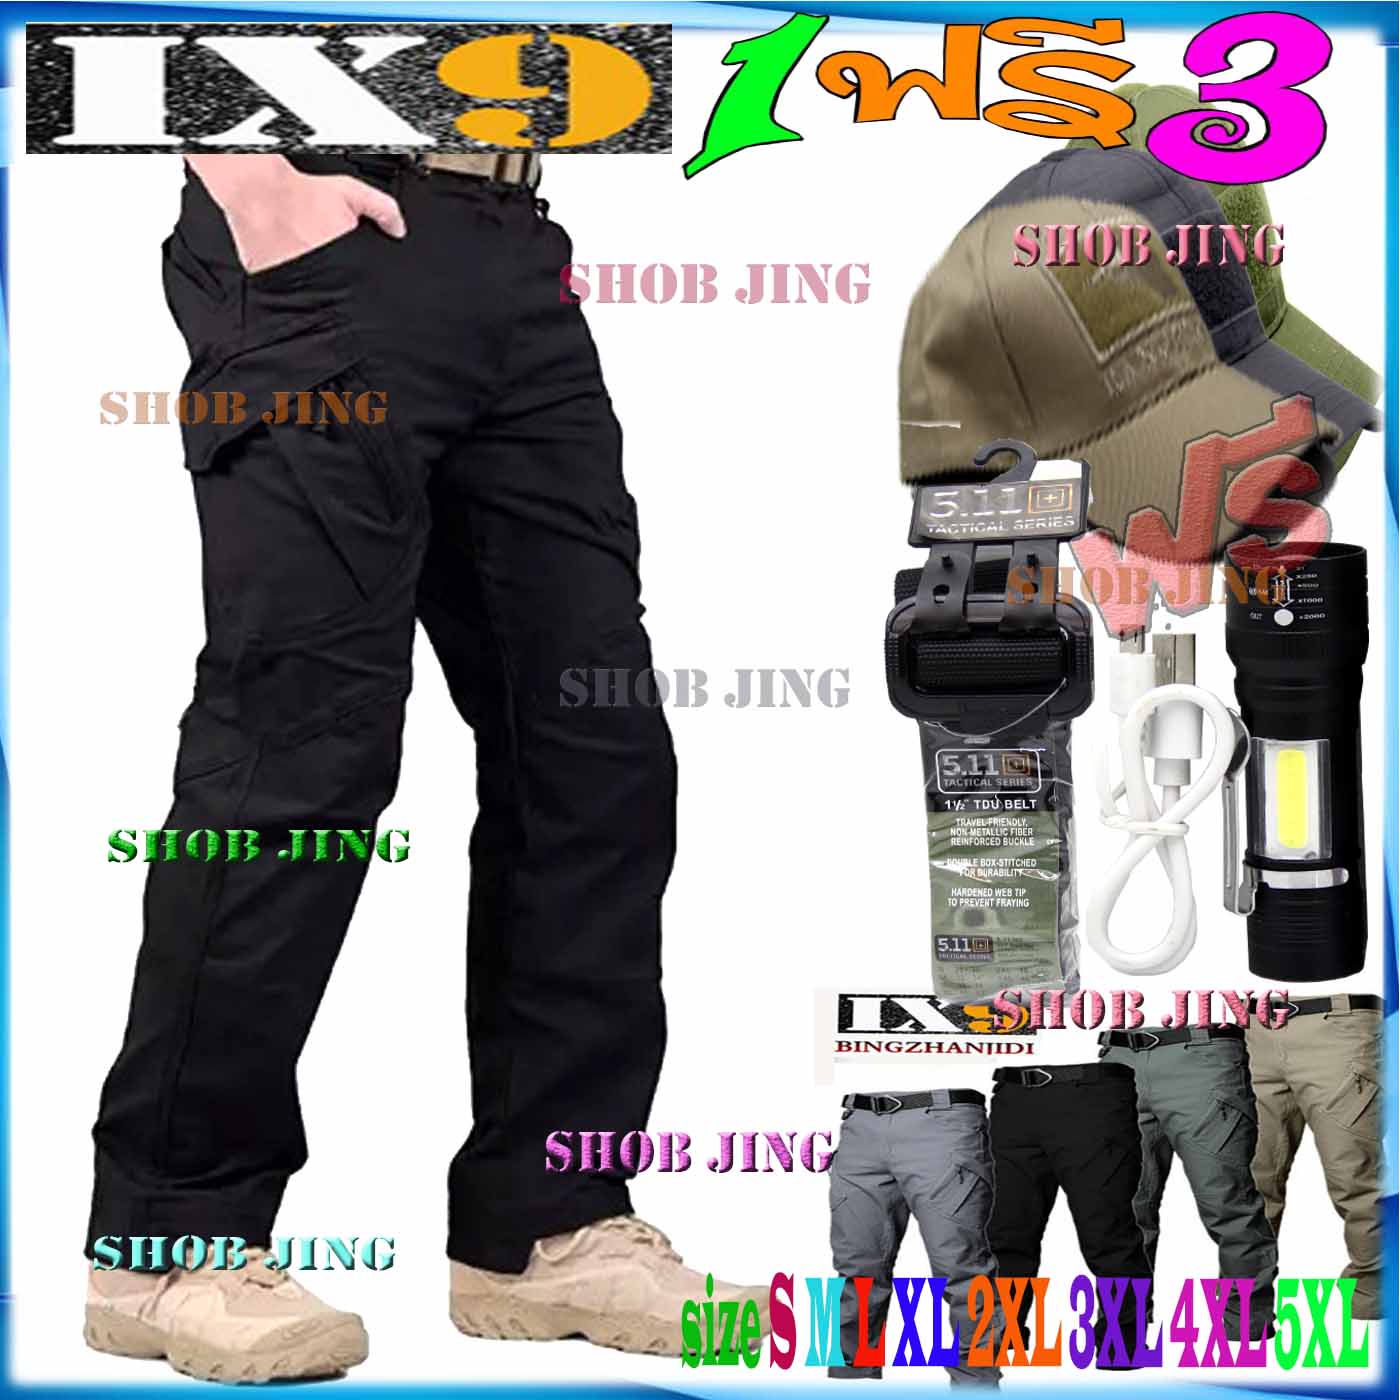 ซื้อ1ฟรี3 กางเกงยุทธวิธีIX9แถมฟรีเข็มขัด+หมวก+ไฟฉาย กางเกงทหารยุทธวิธีน้ำหนักเบาแห้งไว กางเกงทหาร กางเกงคาร์โก้ กางเกงลำลองผู้ชาย